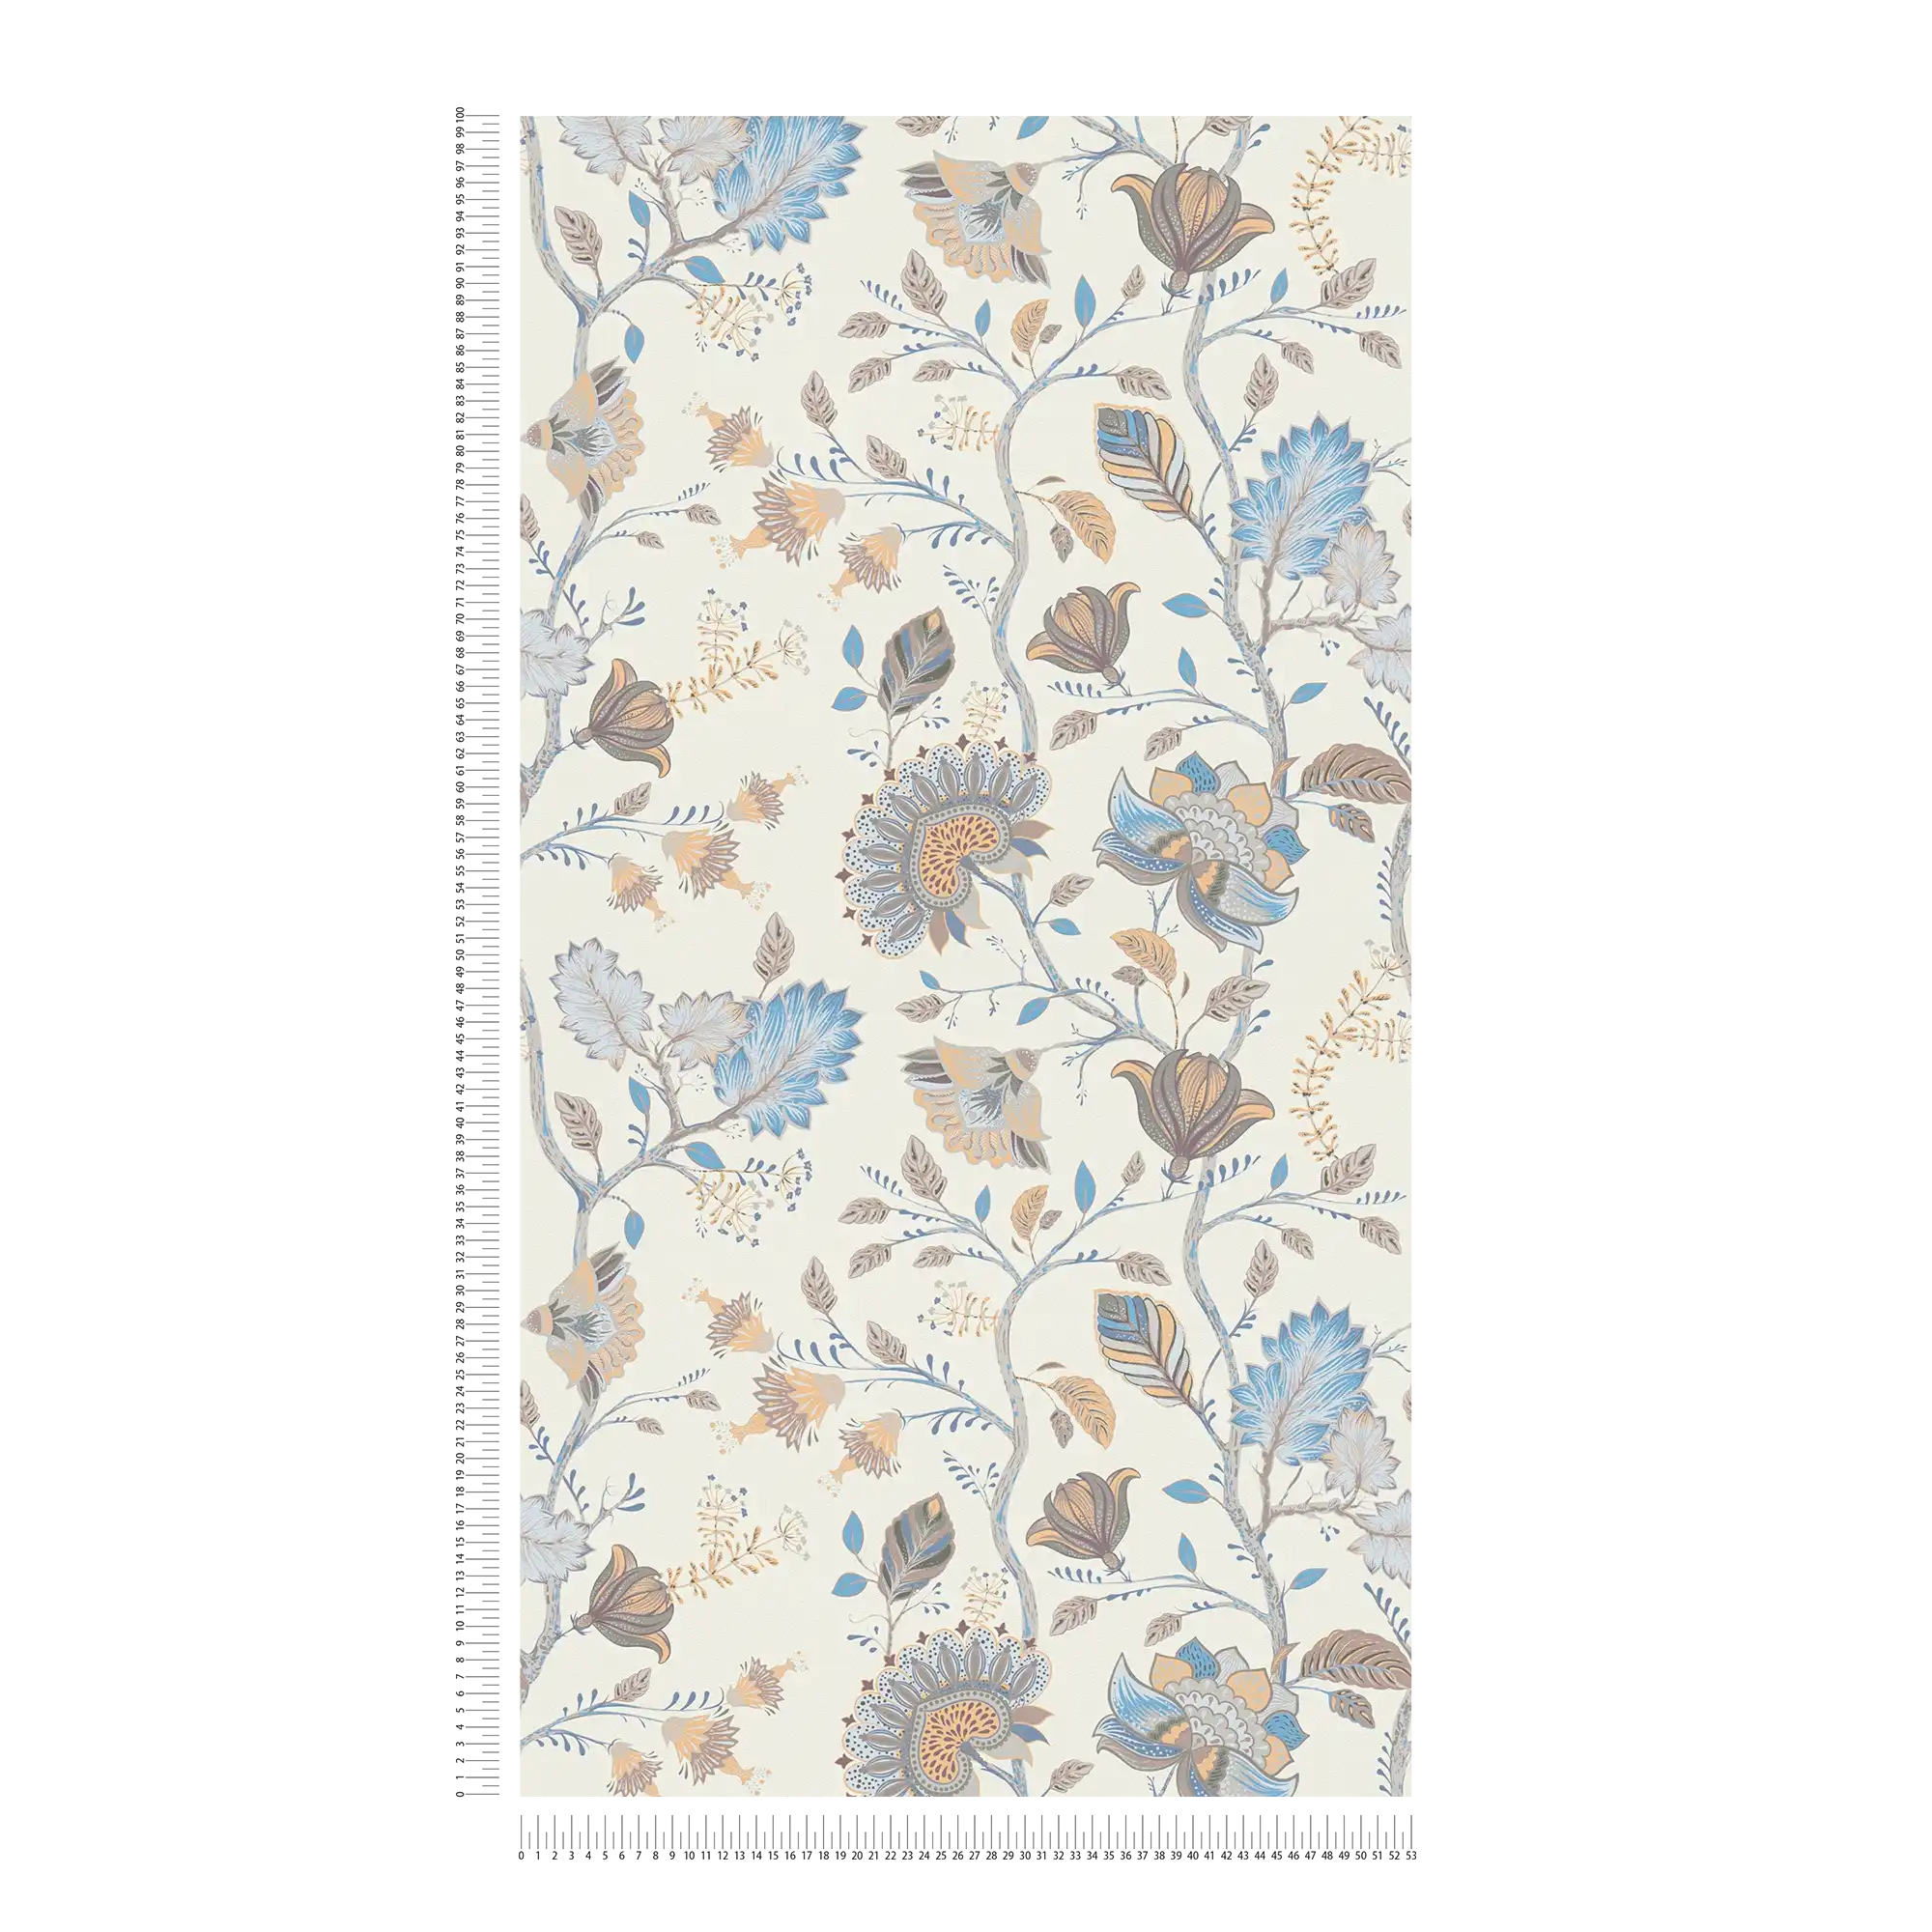             Papel pintado no tejido con motivos florales - azul, crema, gris
        